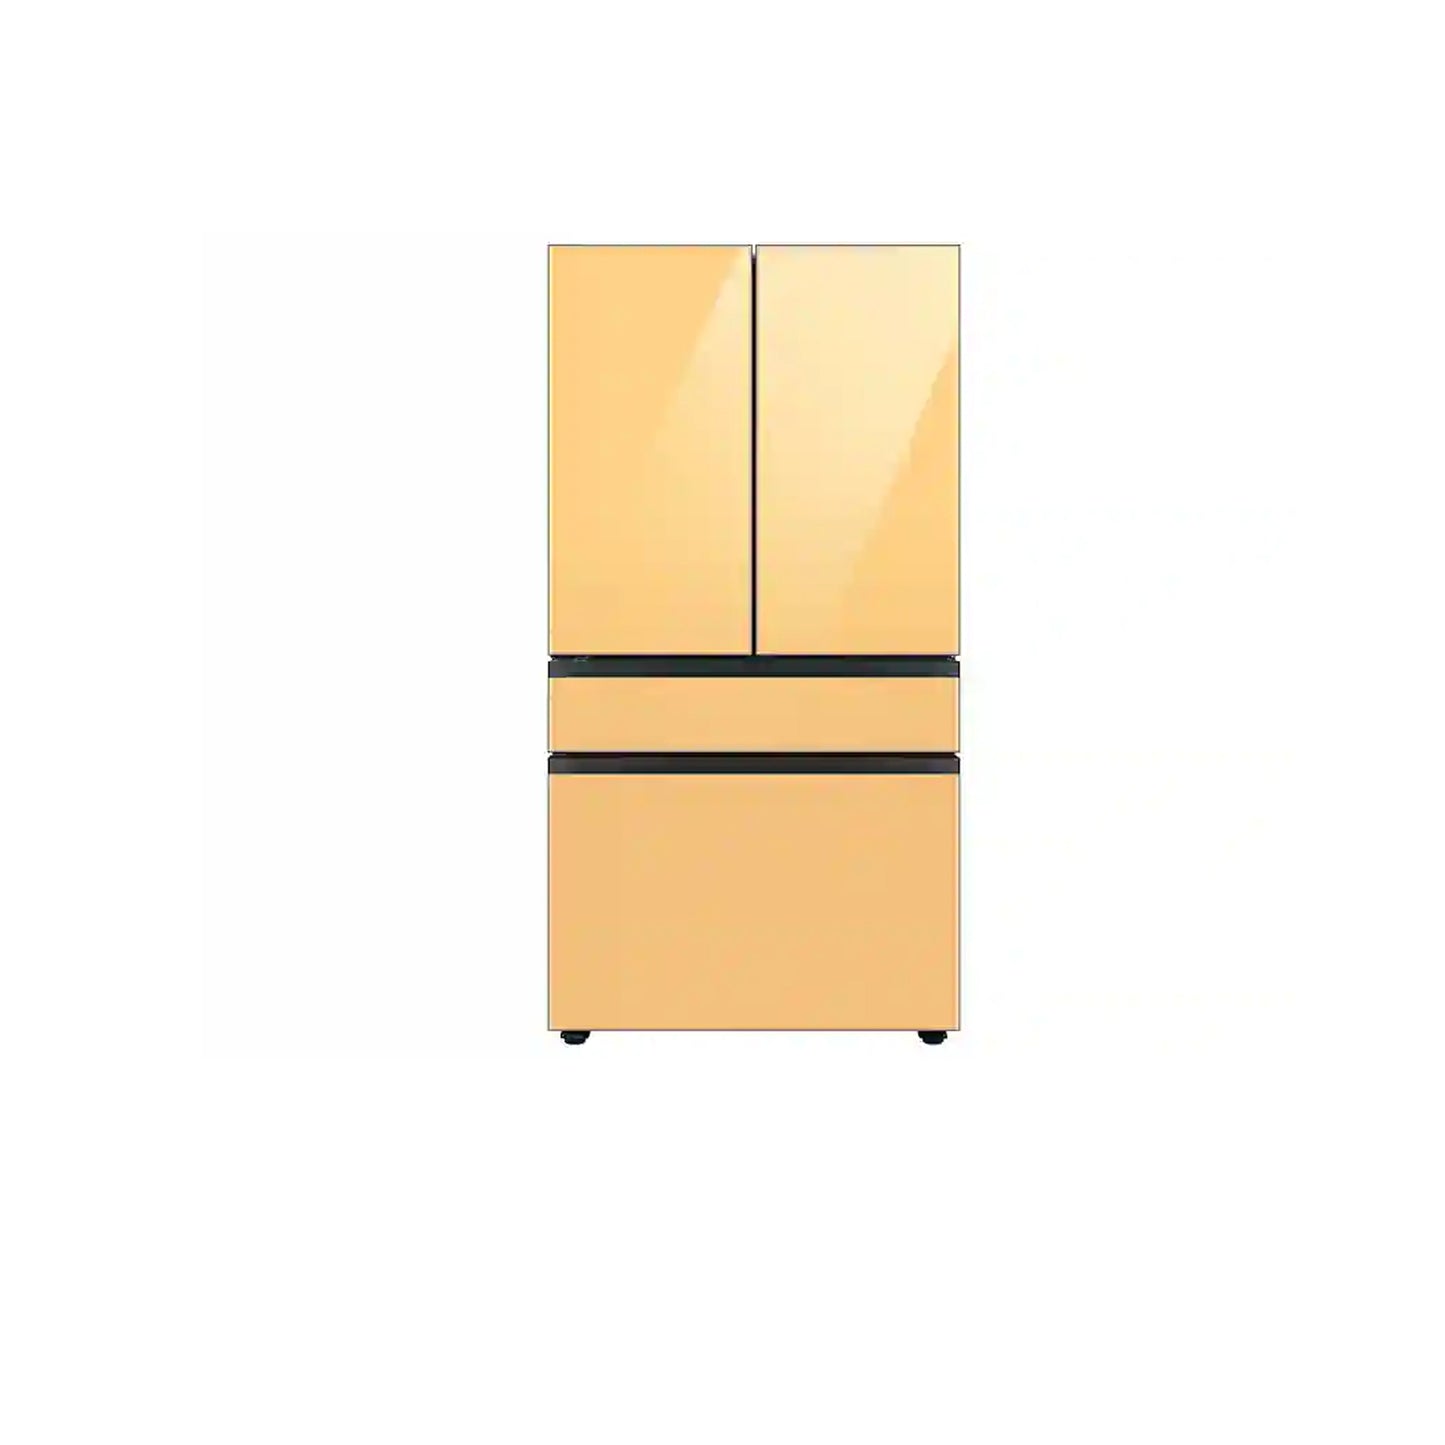 Bespoke 4-Door French Door Refrigerator (23 cu. ft.) with Customizable Door Panel Colors and Beverage Center™ in Matte Grey Glass.